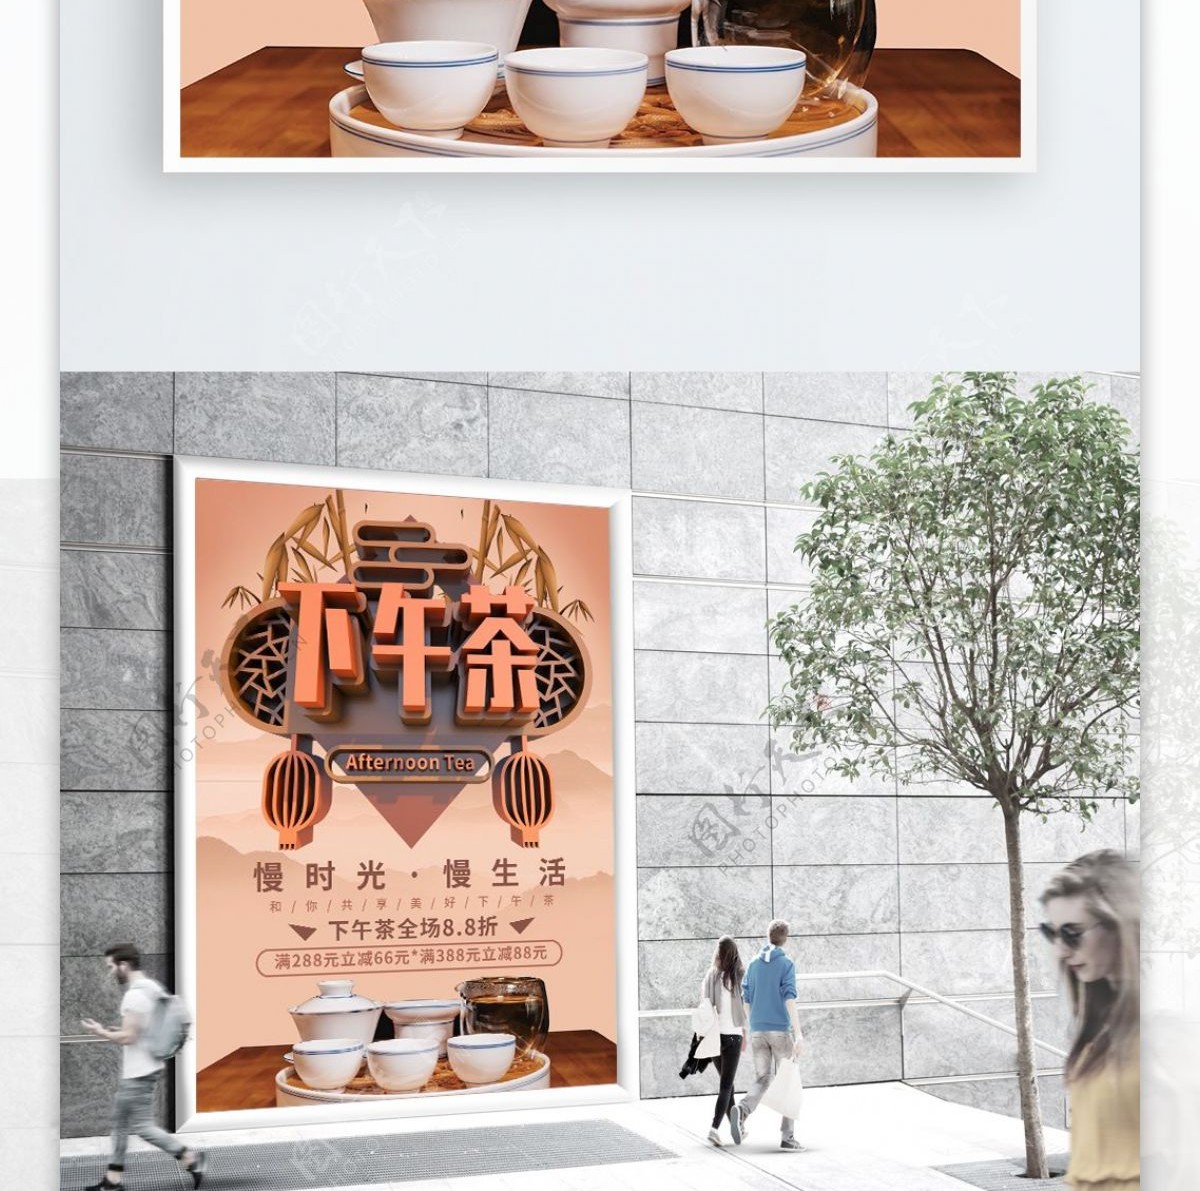 C4D褐色下午茶原创美食主题海报